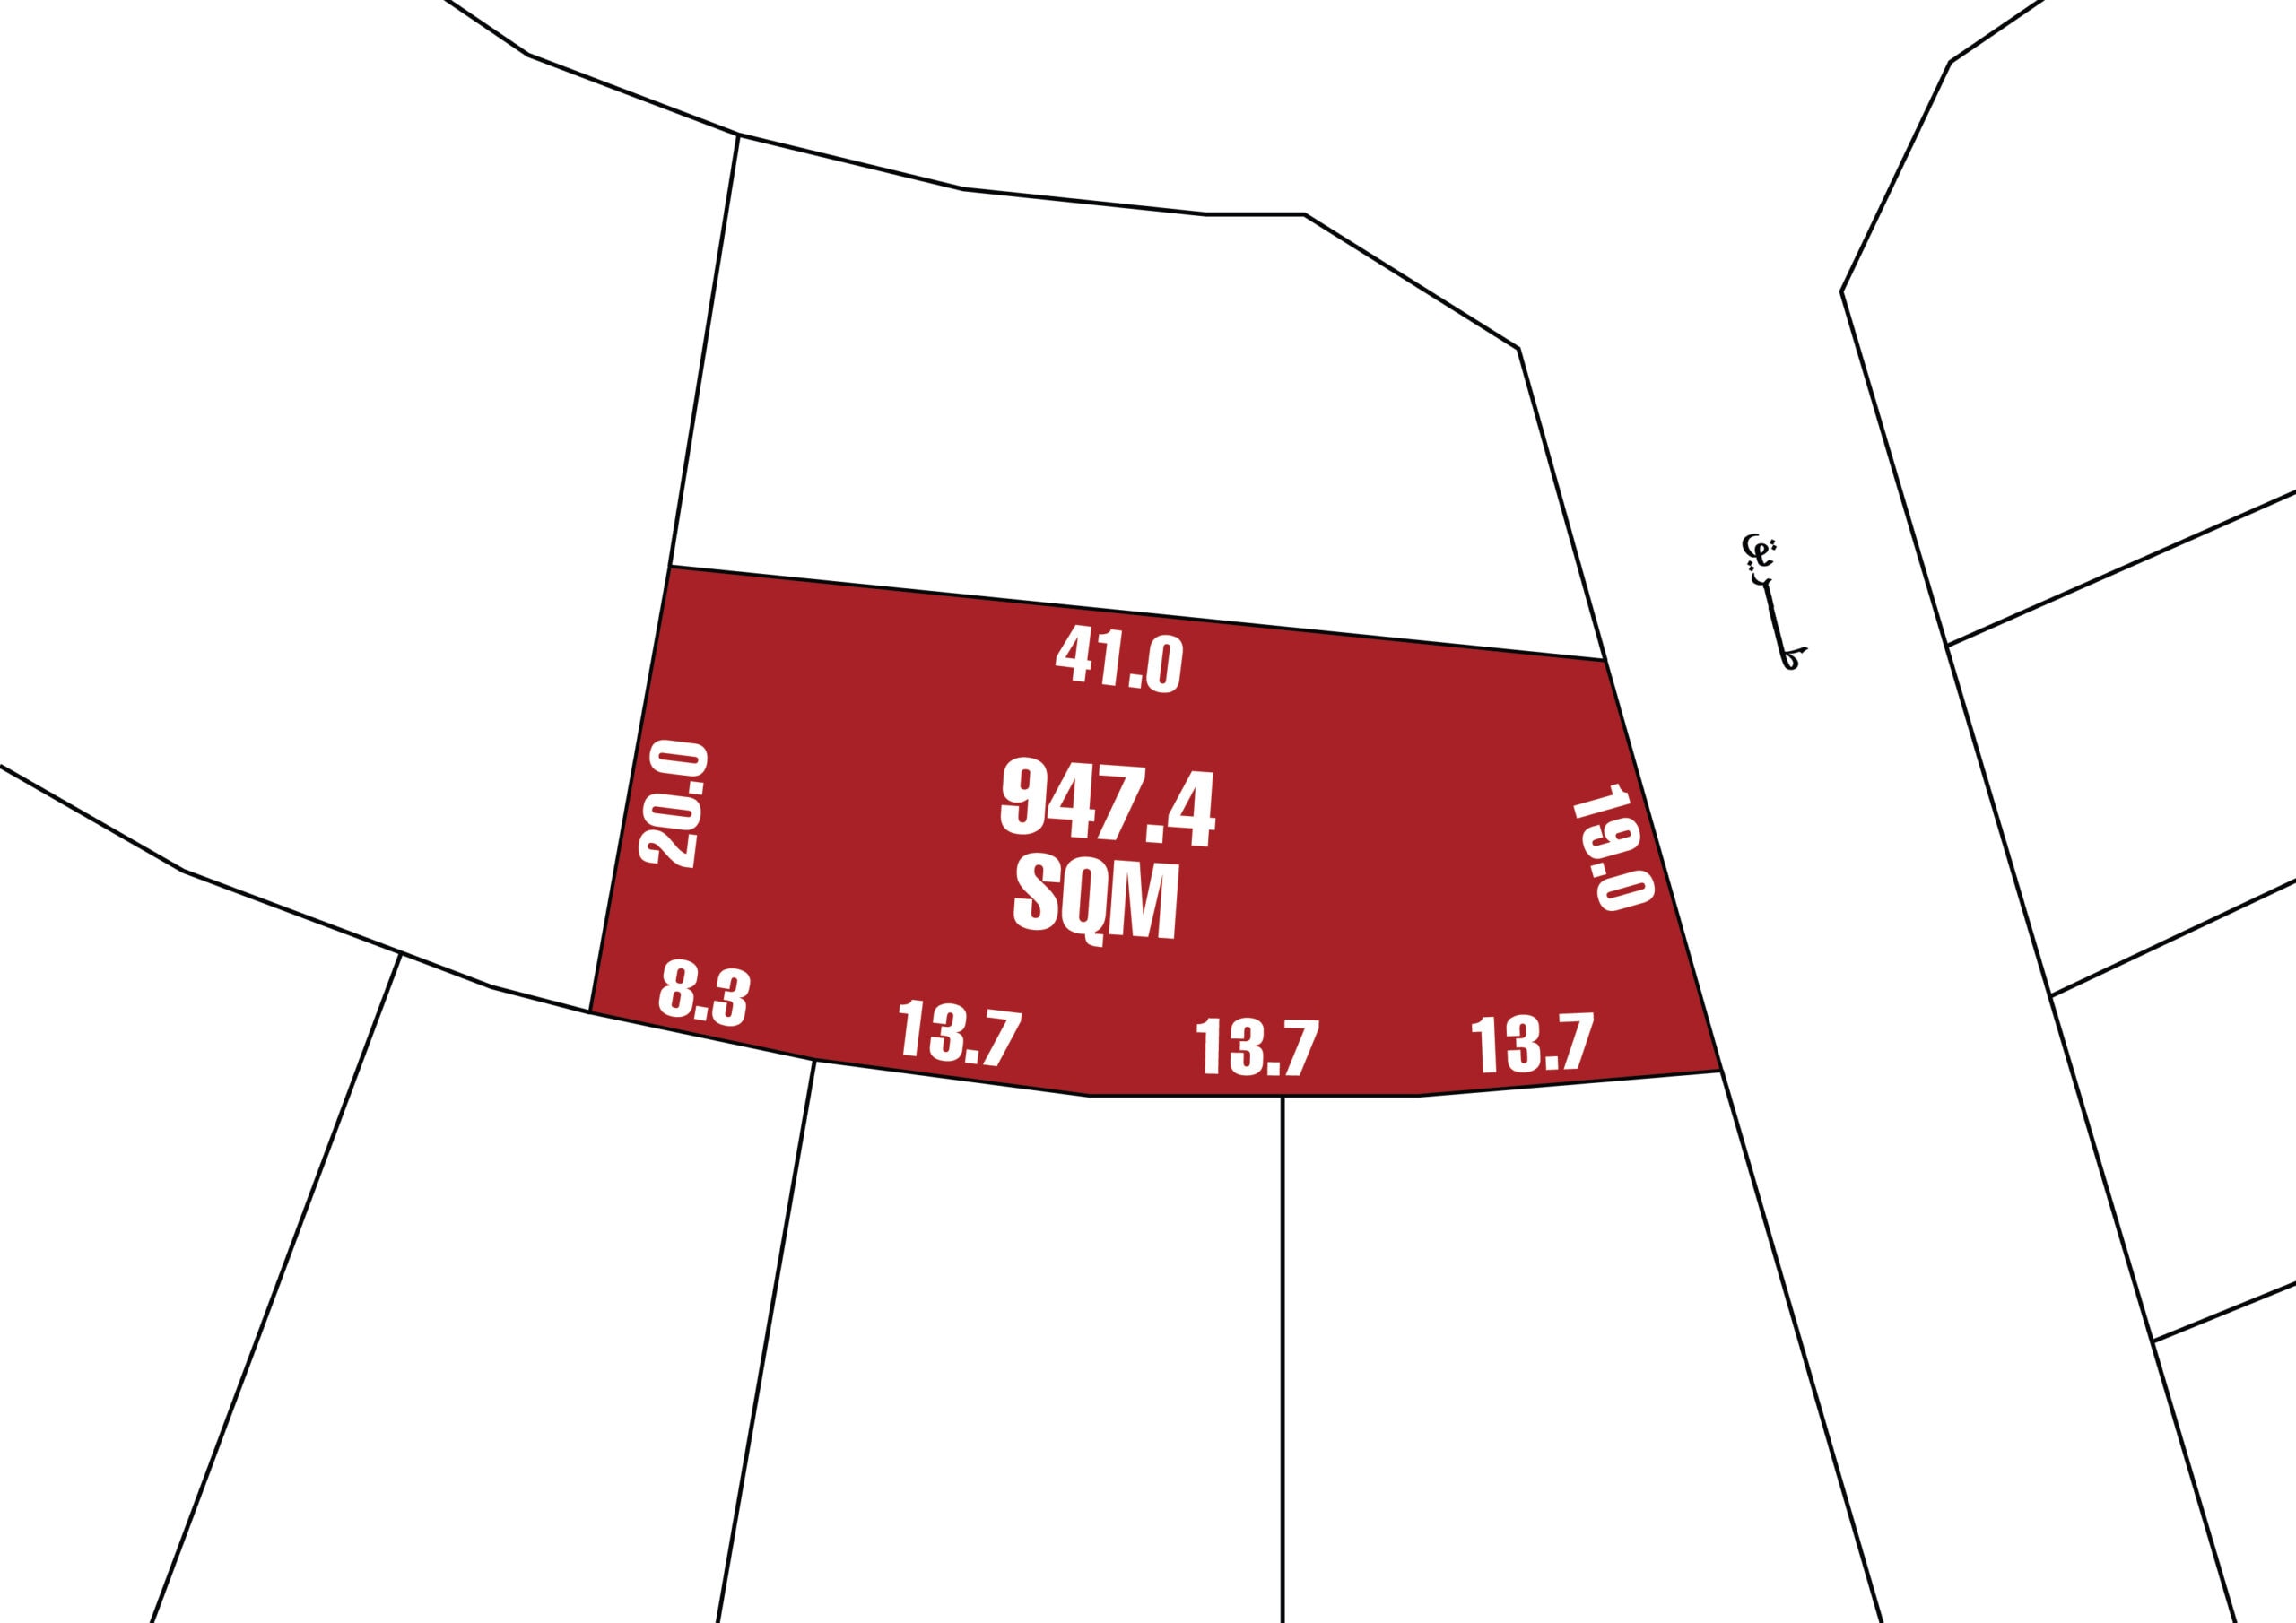 Prime location Land for Sale in Riffa Area | 947.4 SQM